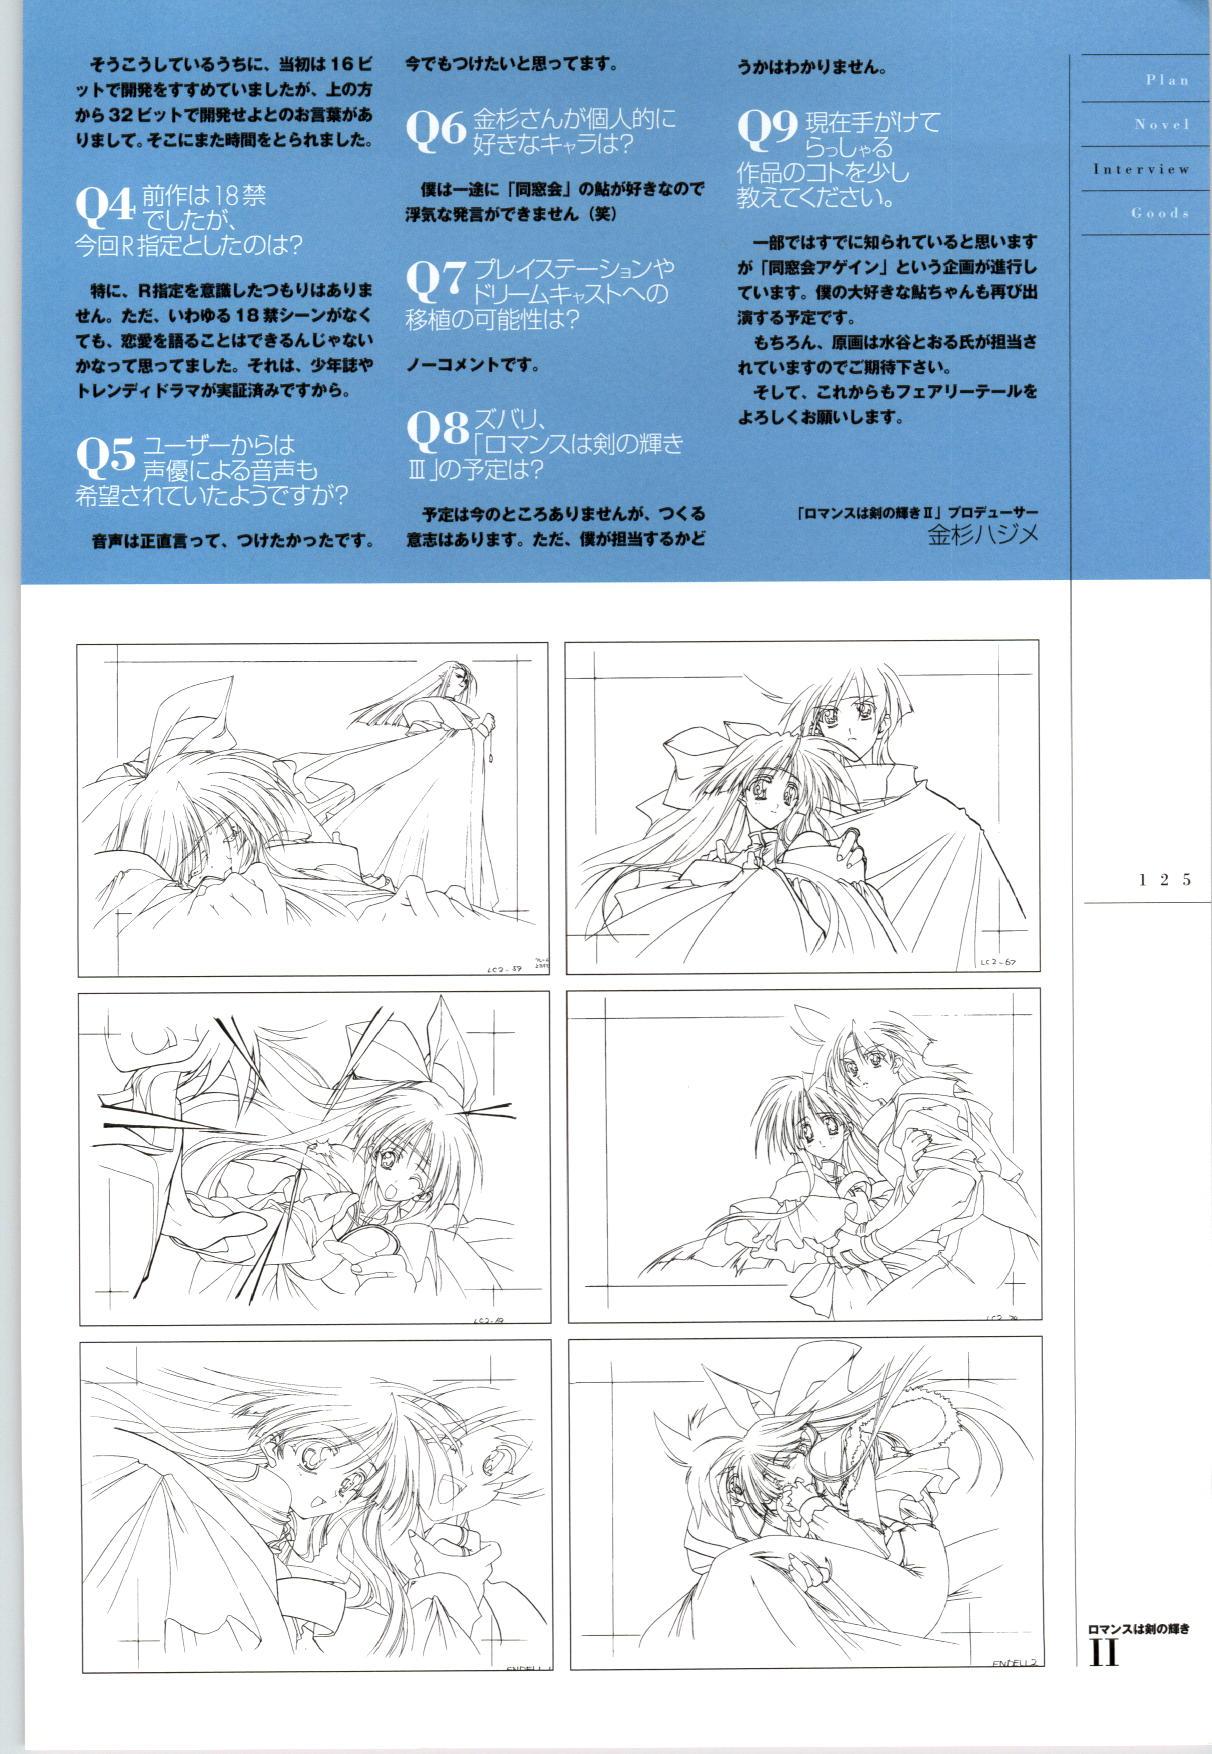 [FAIRYTALE] Romance wa Tsurugi no Kagayaki II - Koushiki Kaido - Emotional Fanbook 125